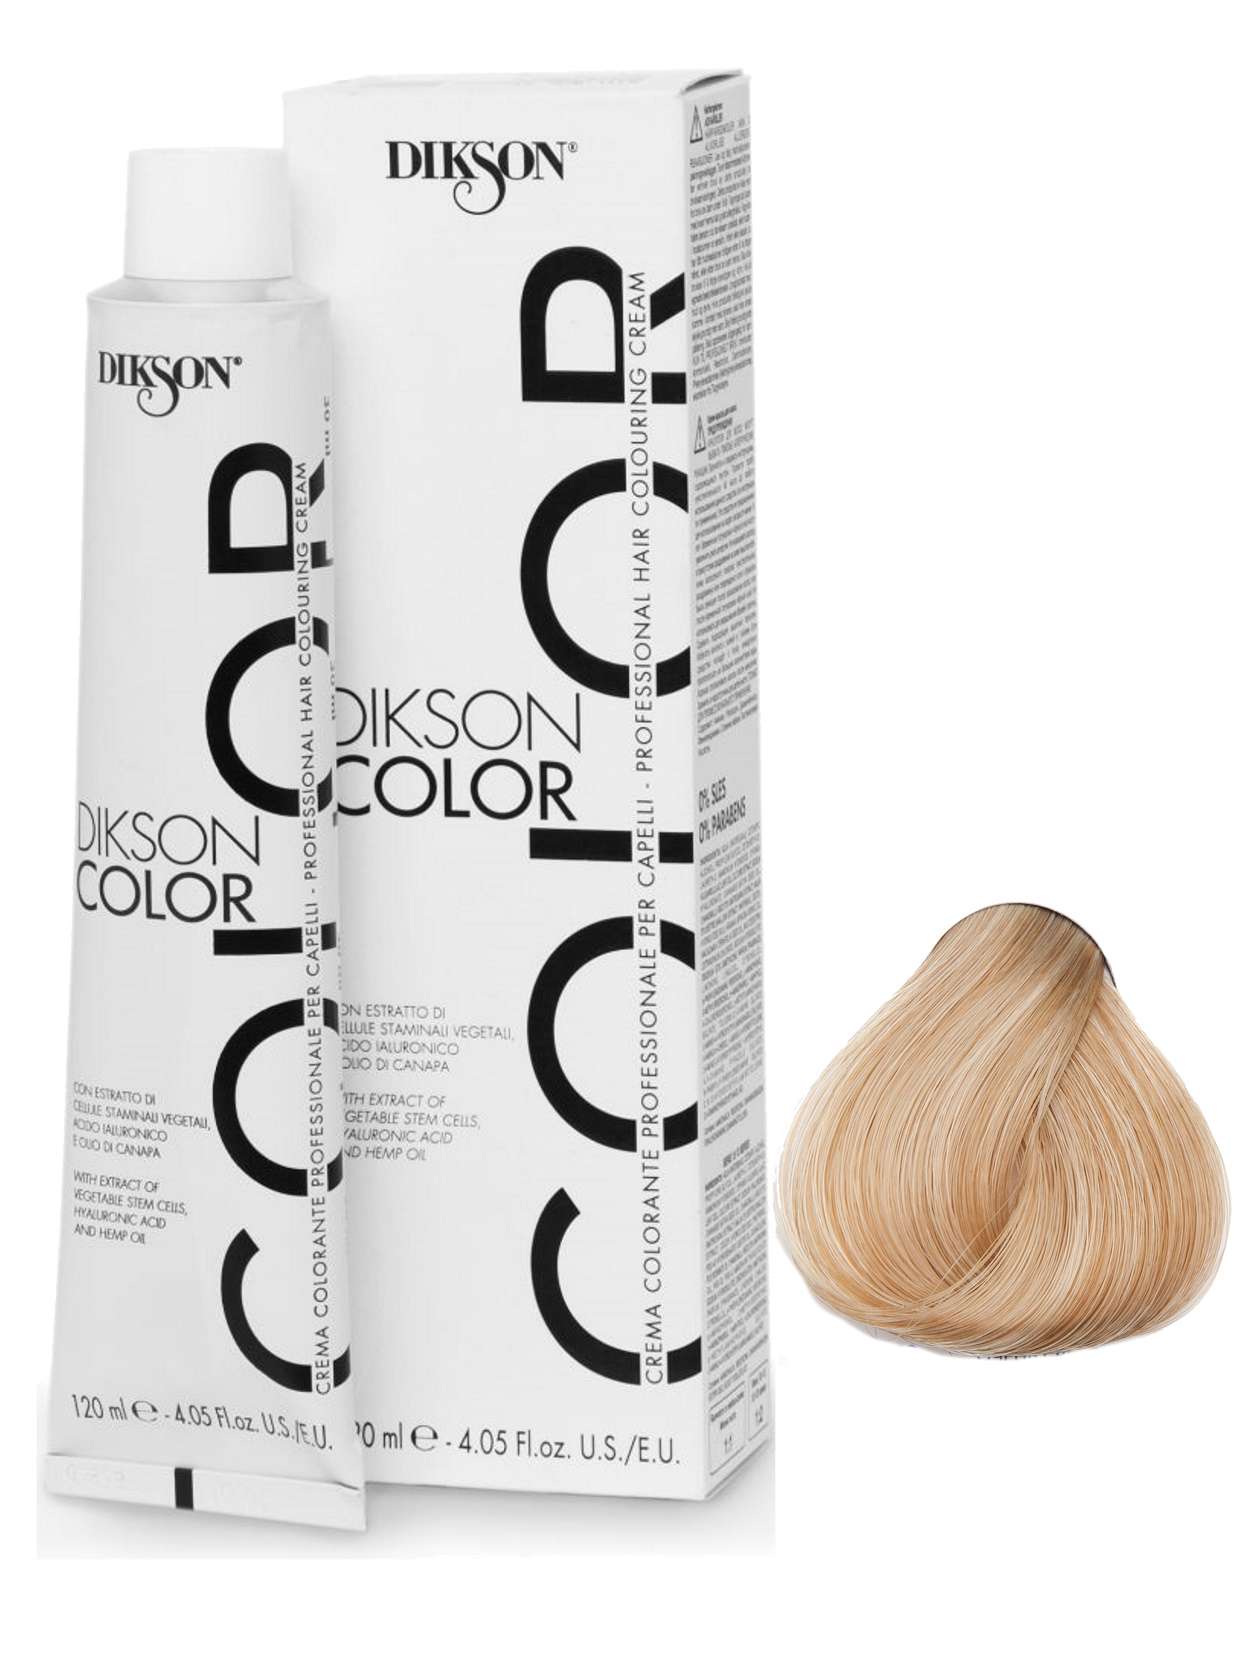 Крем-краска Dikson, COLOR для окрашивания волос 9.0 очень светло-русый 120 мл краска для граффити arton 400 мл в аэрозоле cannabis